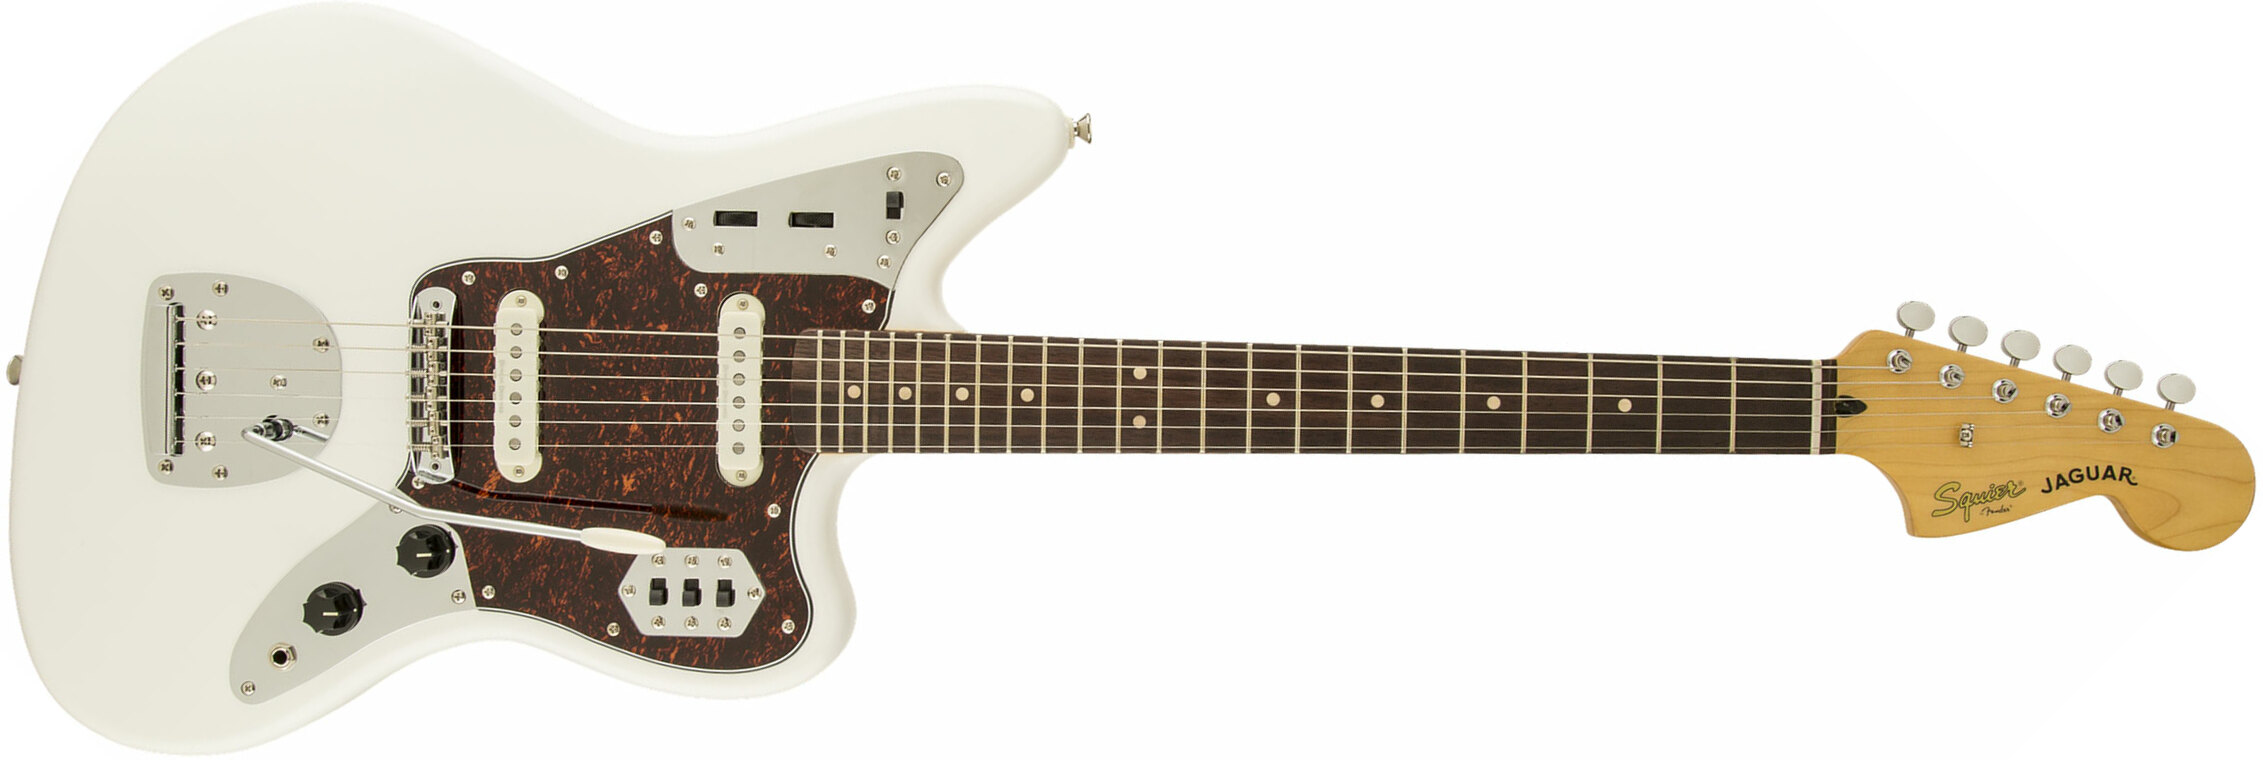 Squier Jaguar Vintage Modified Ss Lau - Olympic White - Guitarra electrica retro rock - Main picture